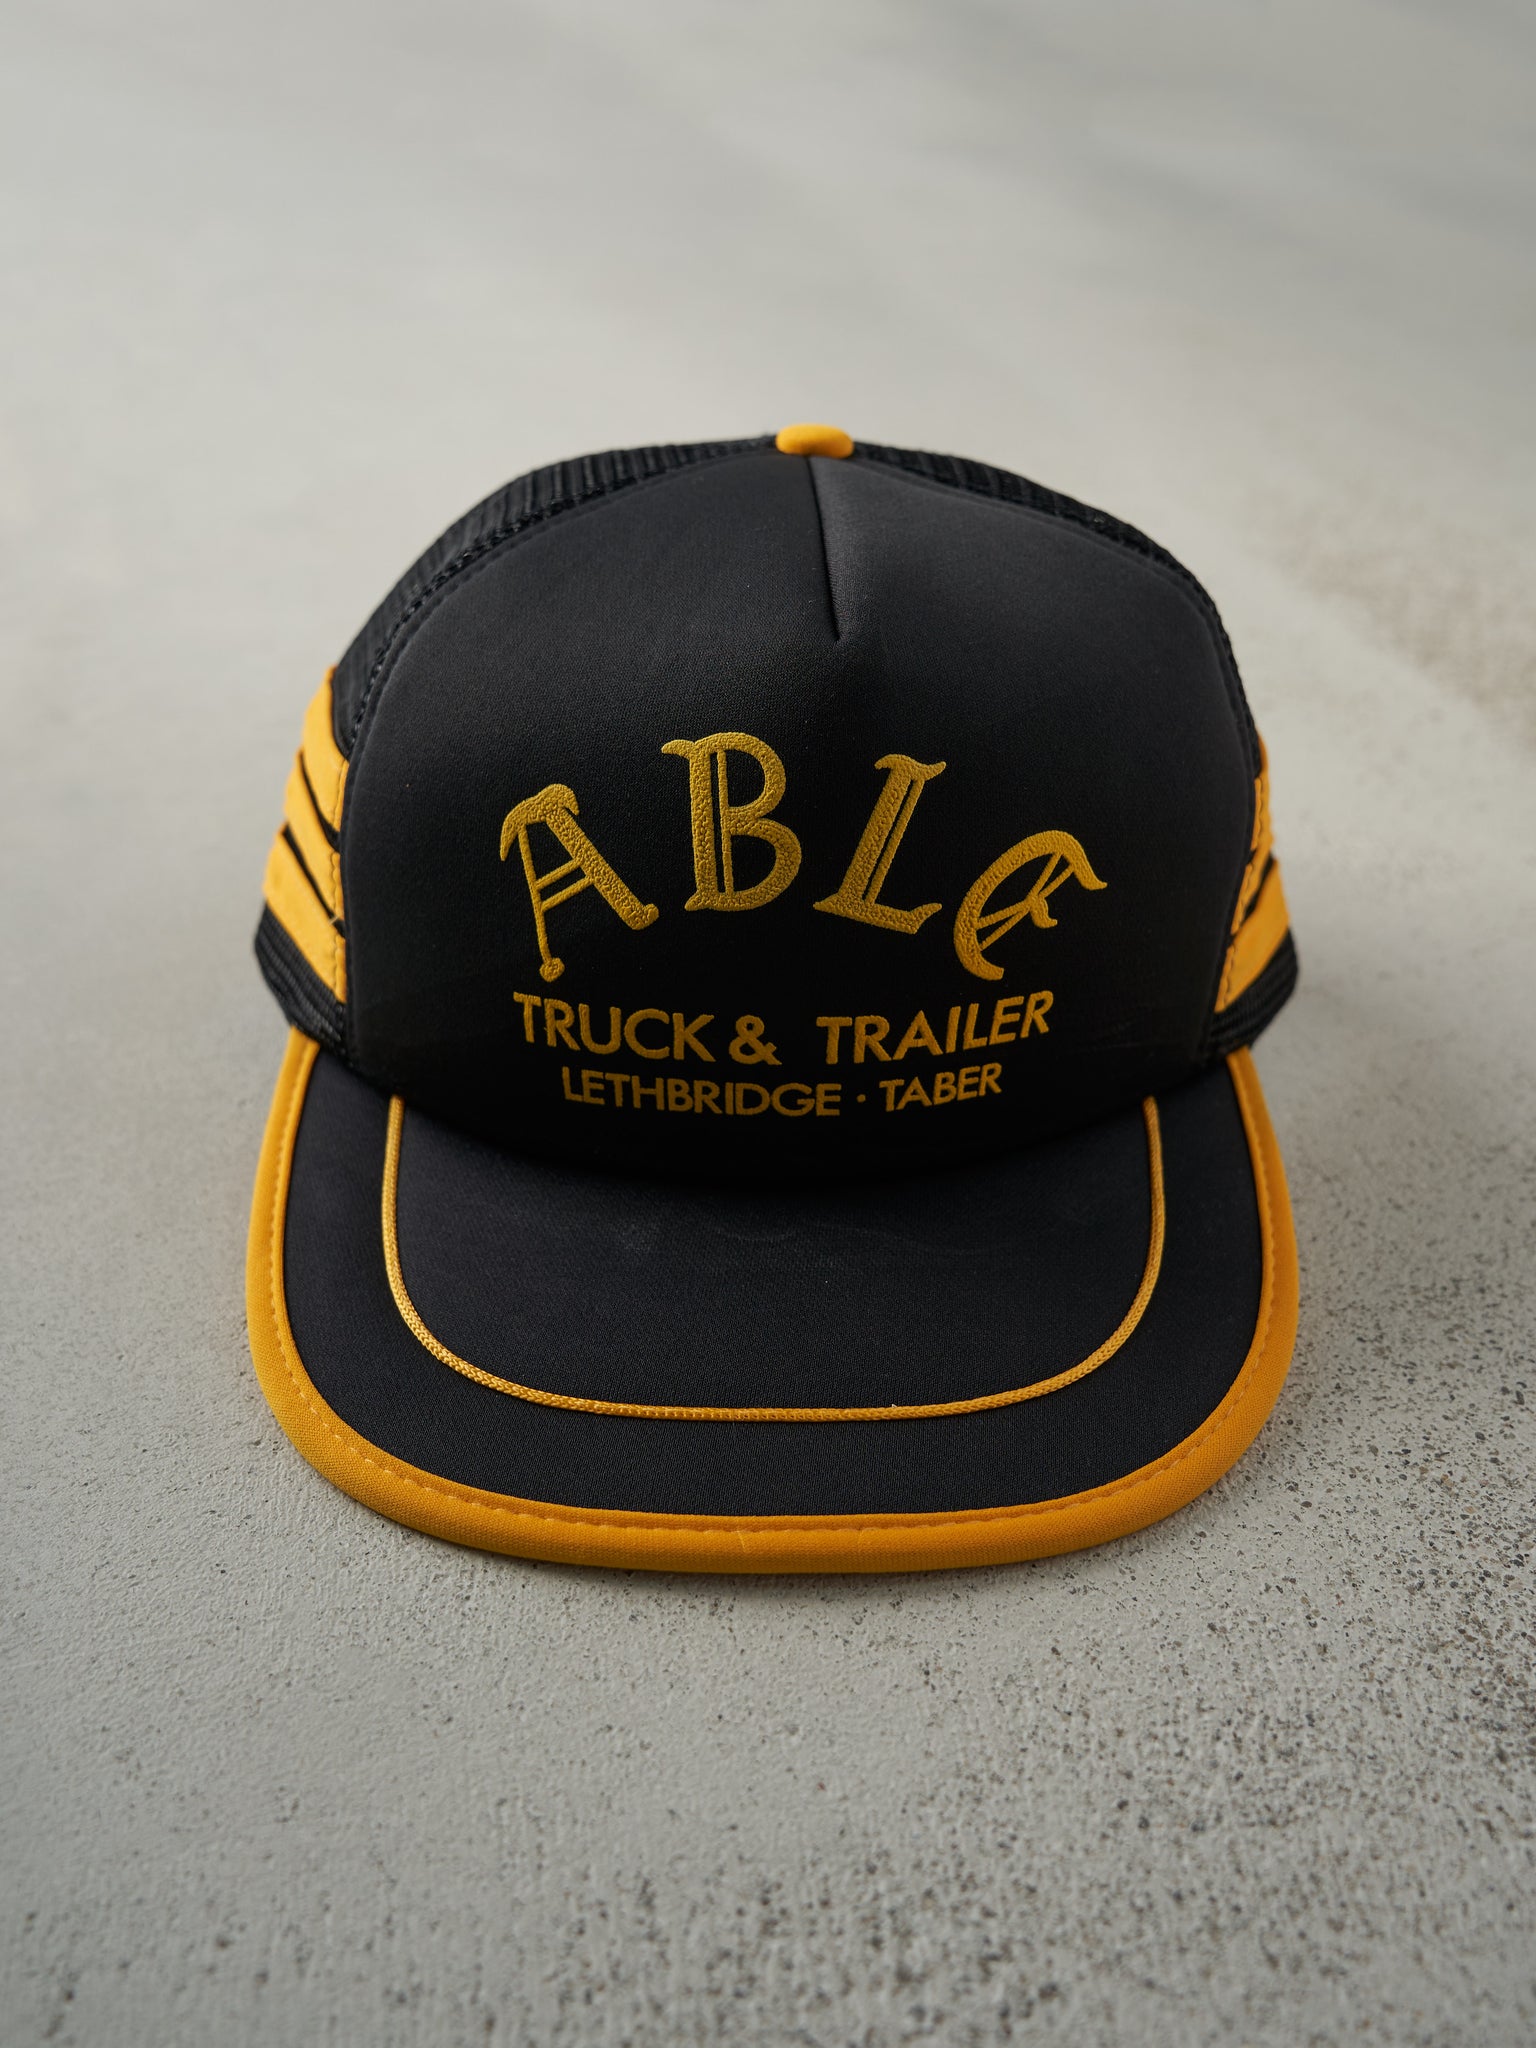 Vintage 80s Black & Yellow ABLE Truck & Trailer Foam Trucker Hat